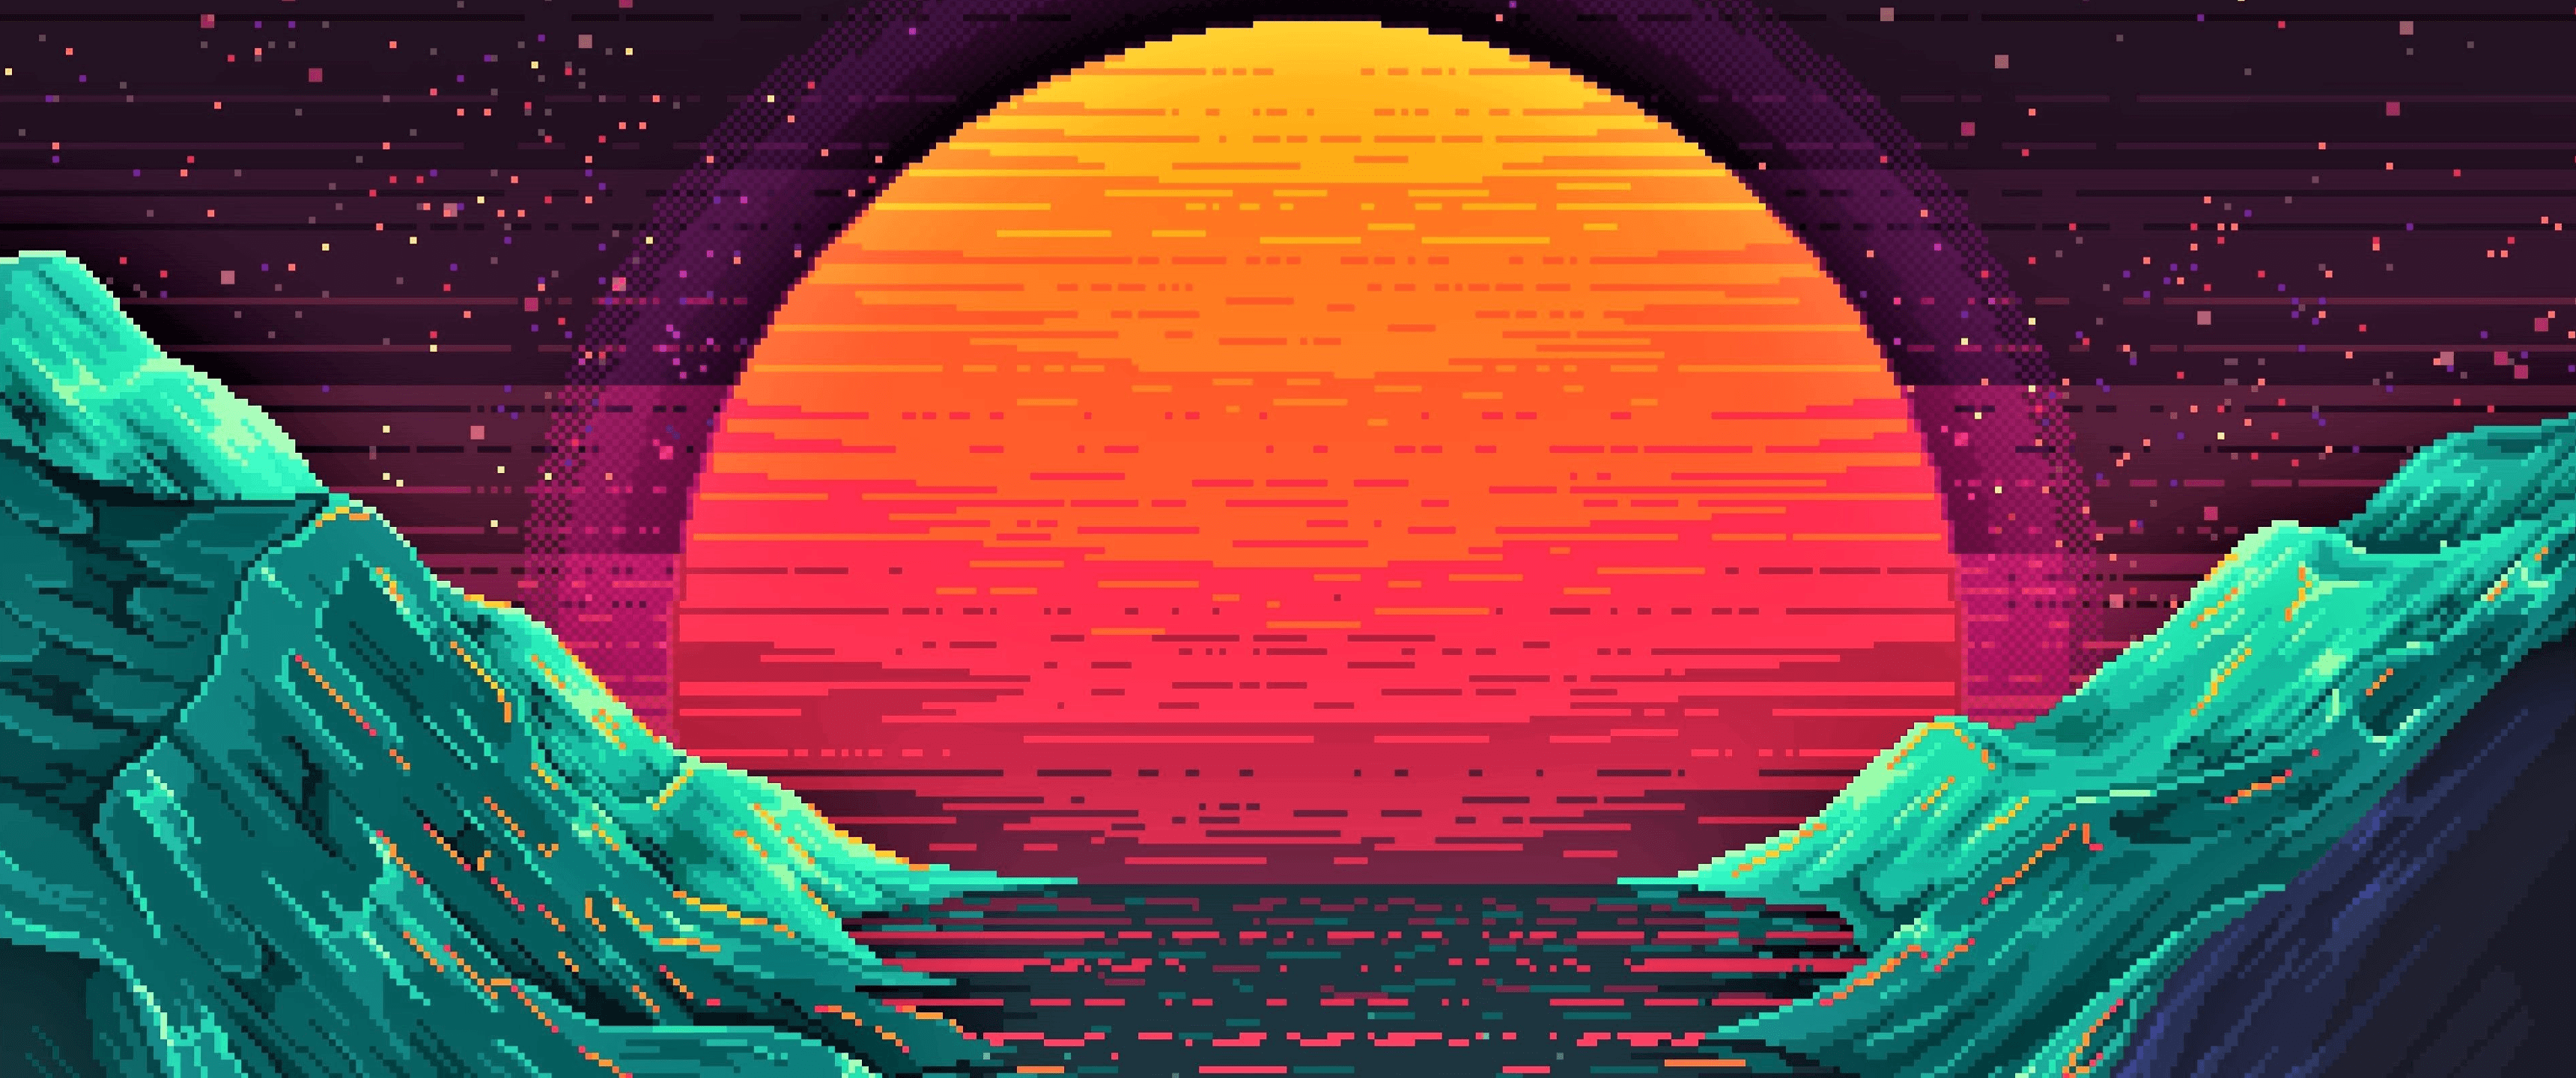 Outrun Sunset [3440x1440]